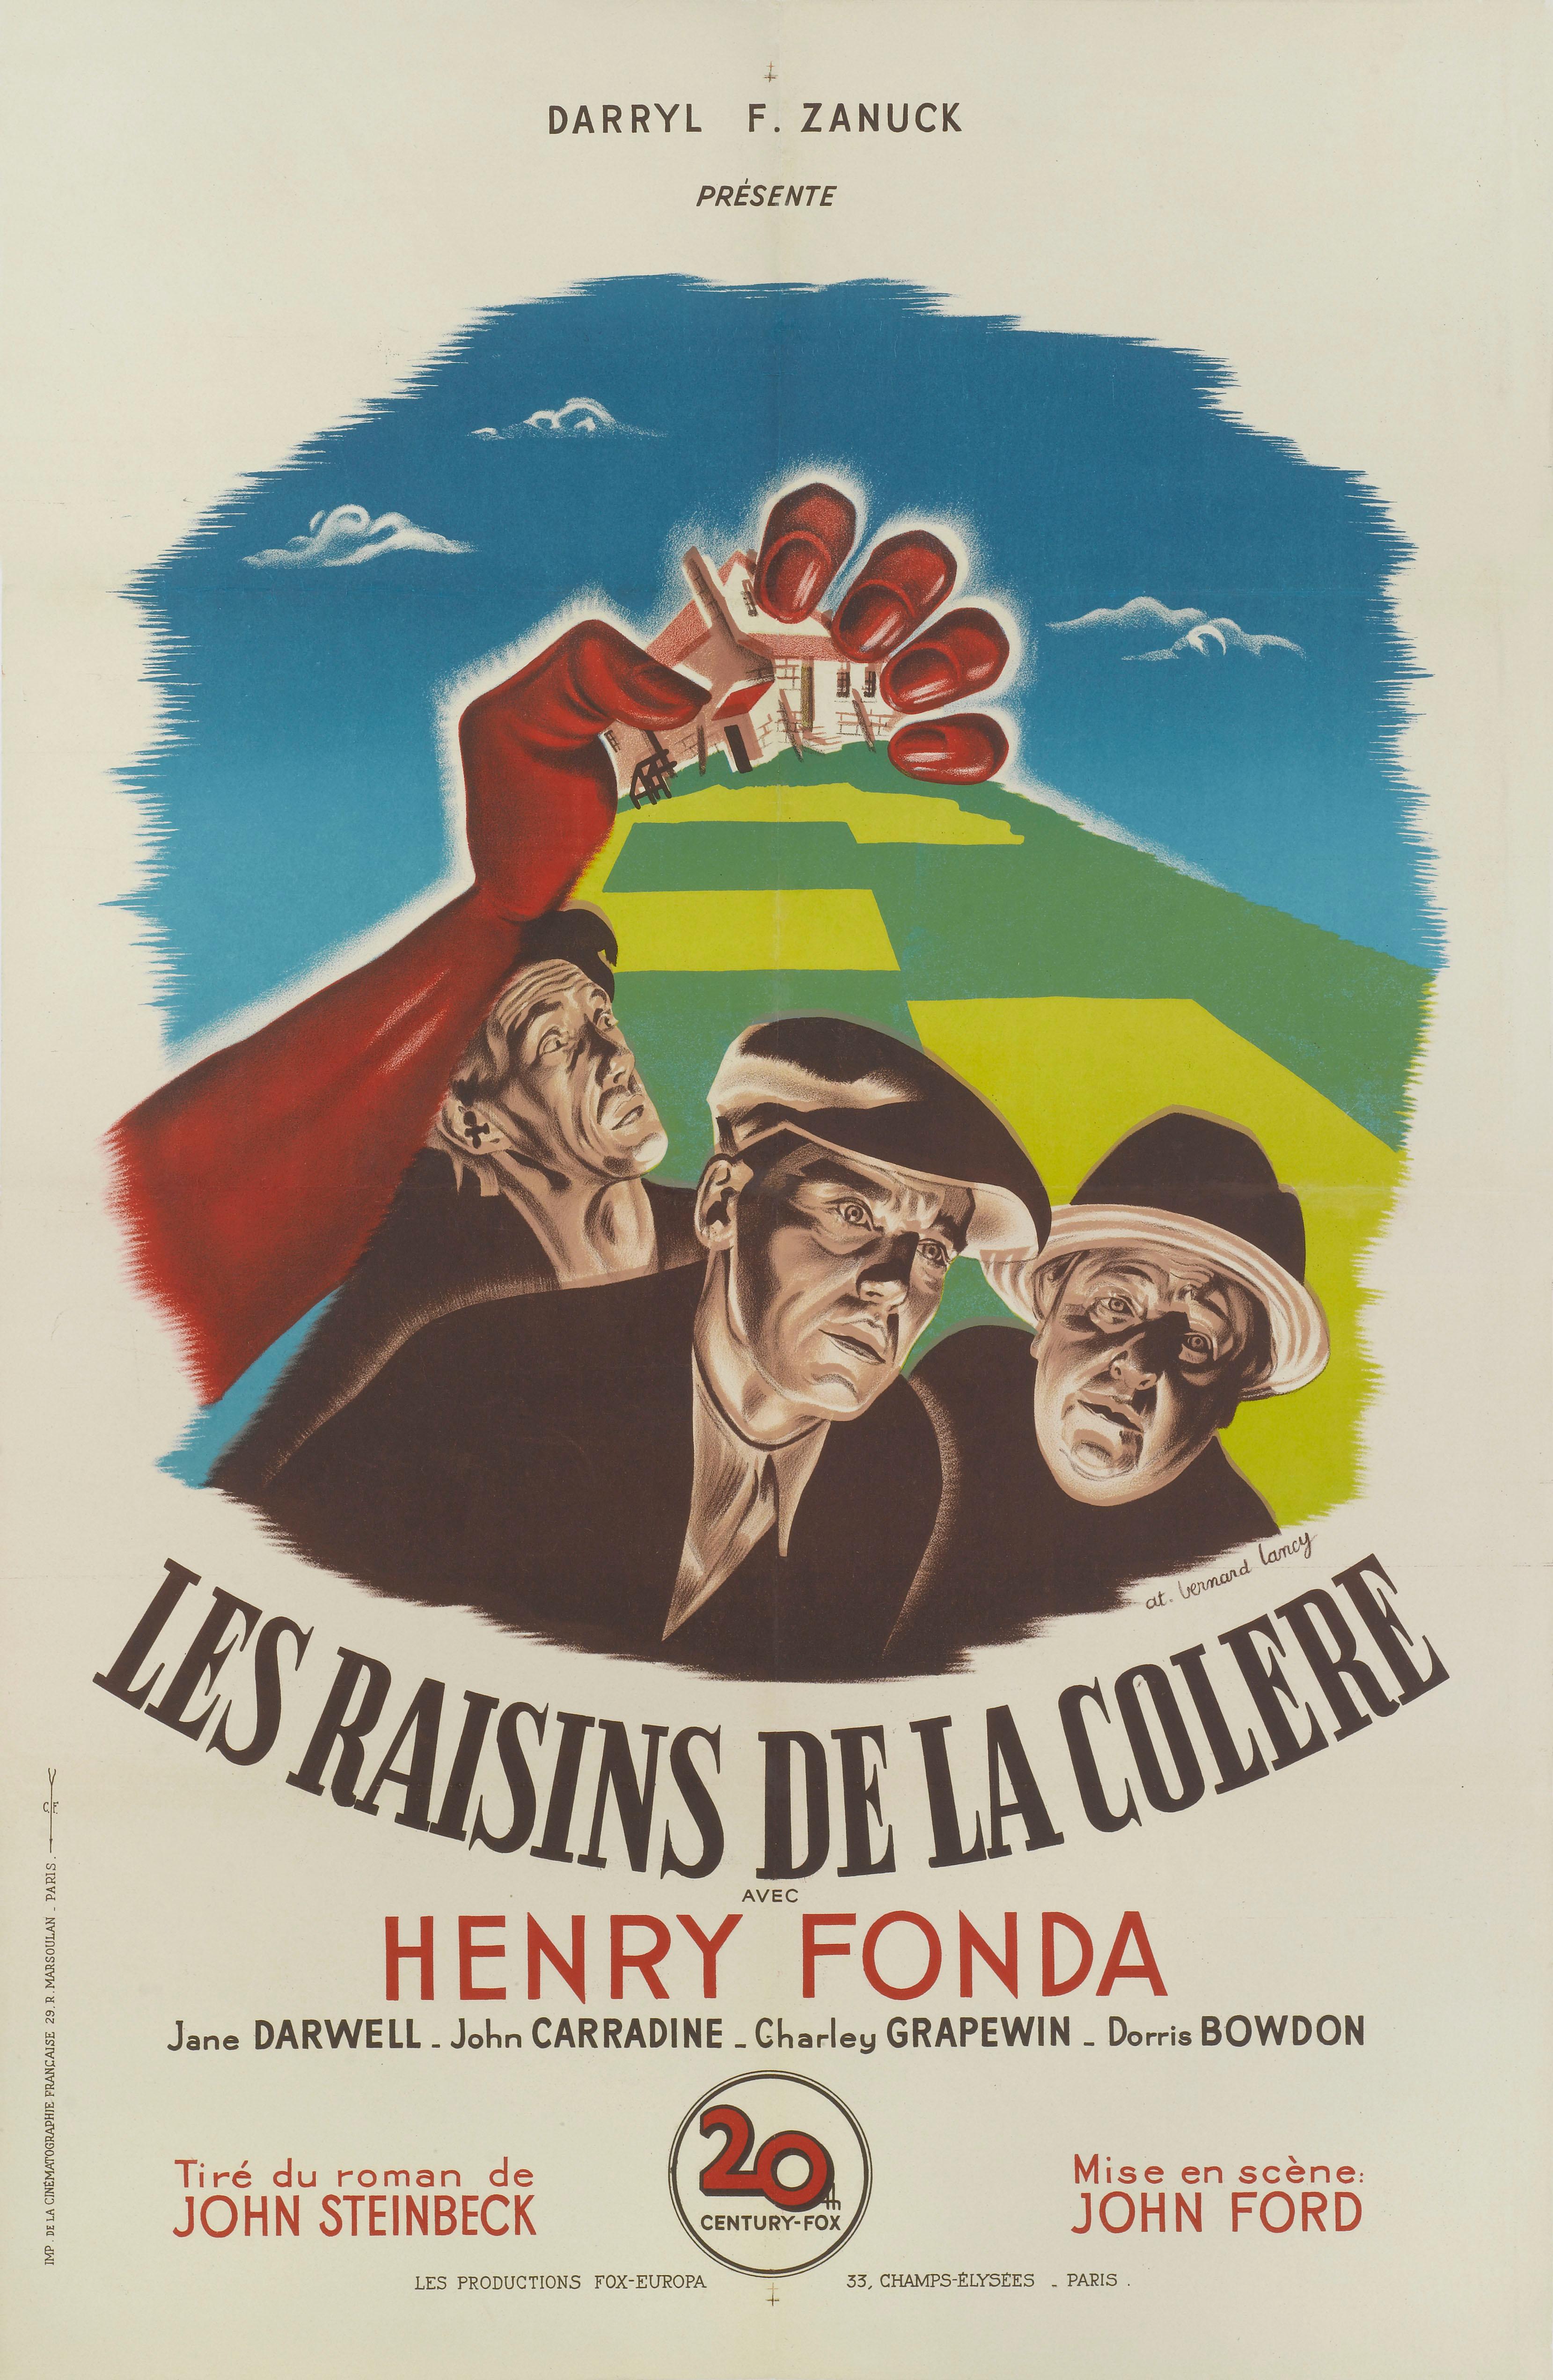 Affiche française originale du chef-d'œuvre de 1940 réalisé par John Ford avec Henry Fonda, John Carradine et Jane Darwell.
L'illustration saisissante est due à Bernard Lancy (1892-1964) et a été utilisée pour la première sortie française du film